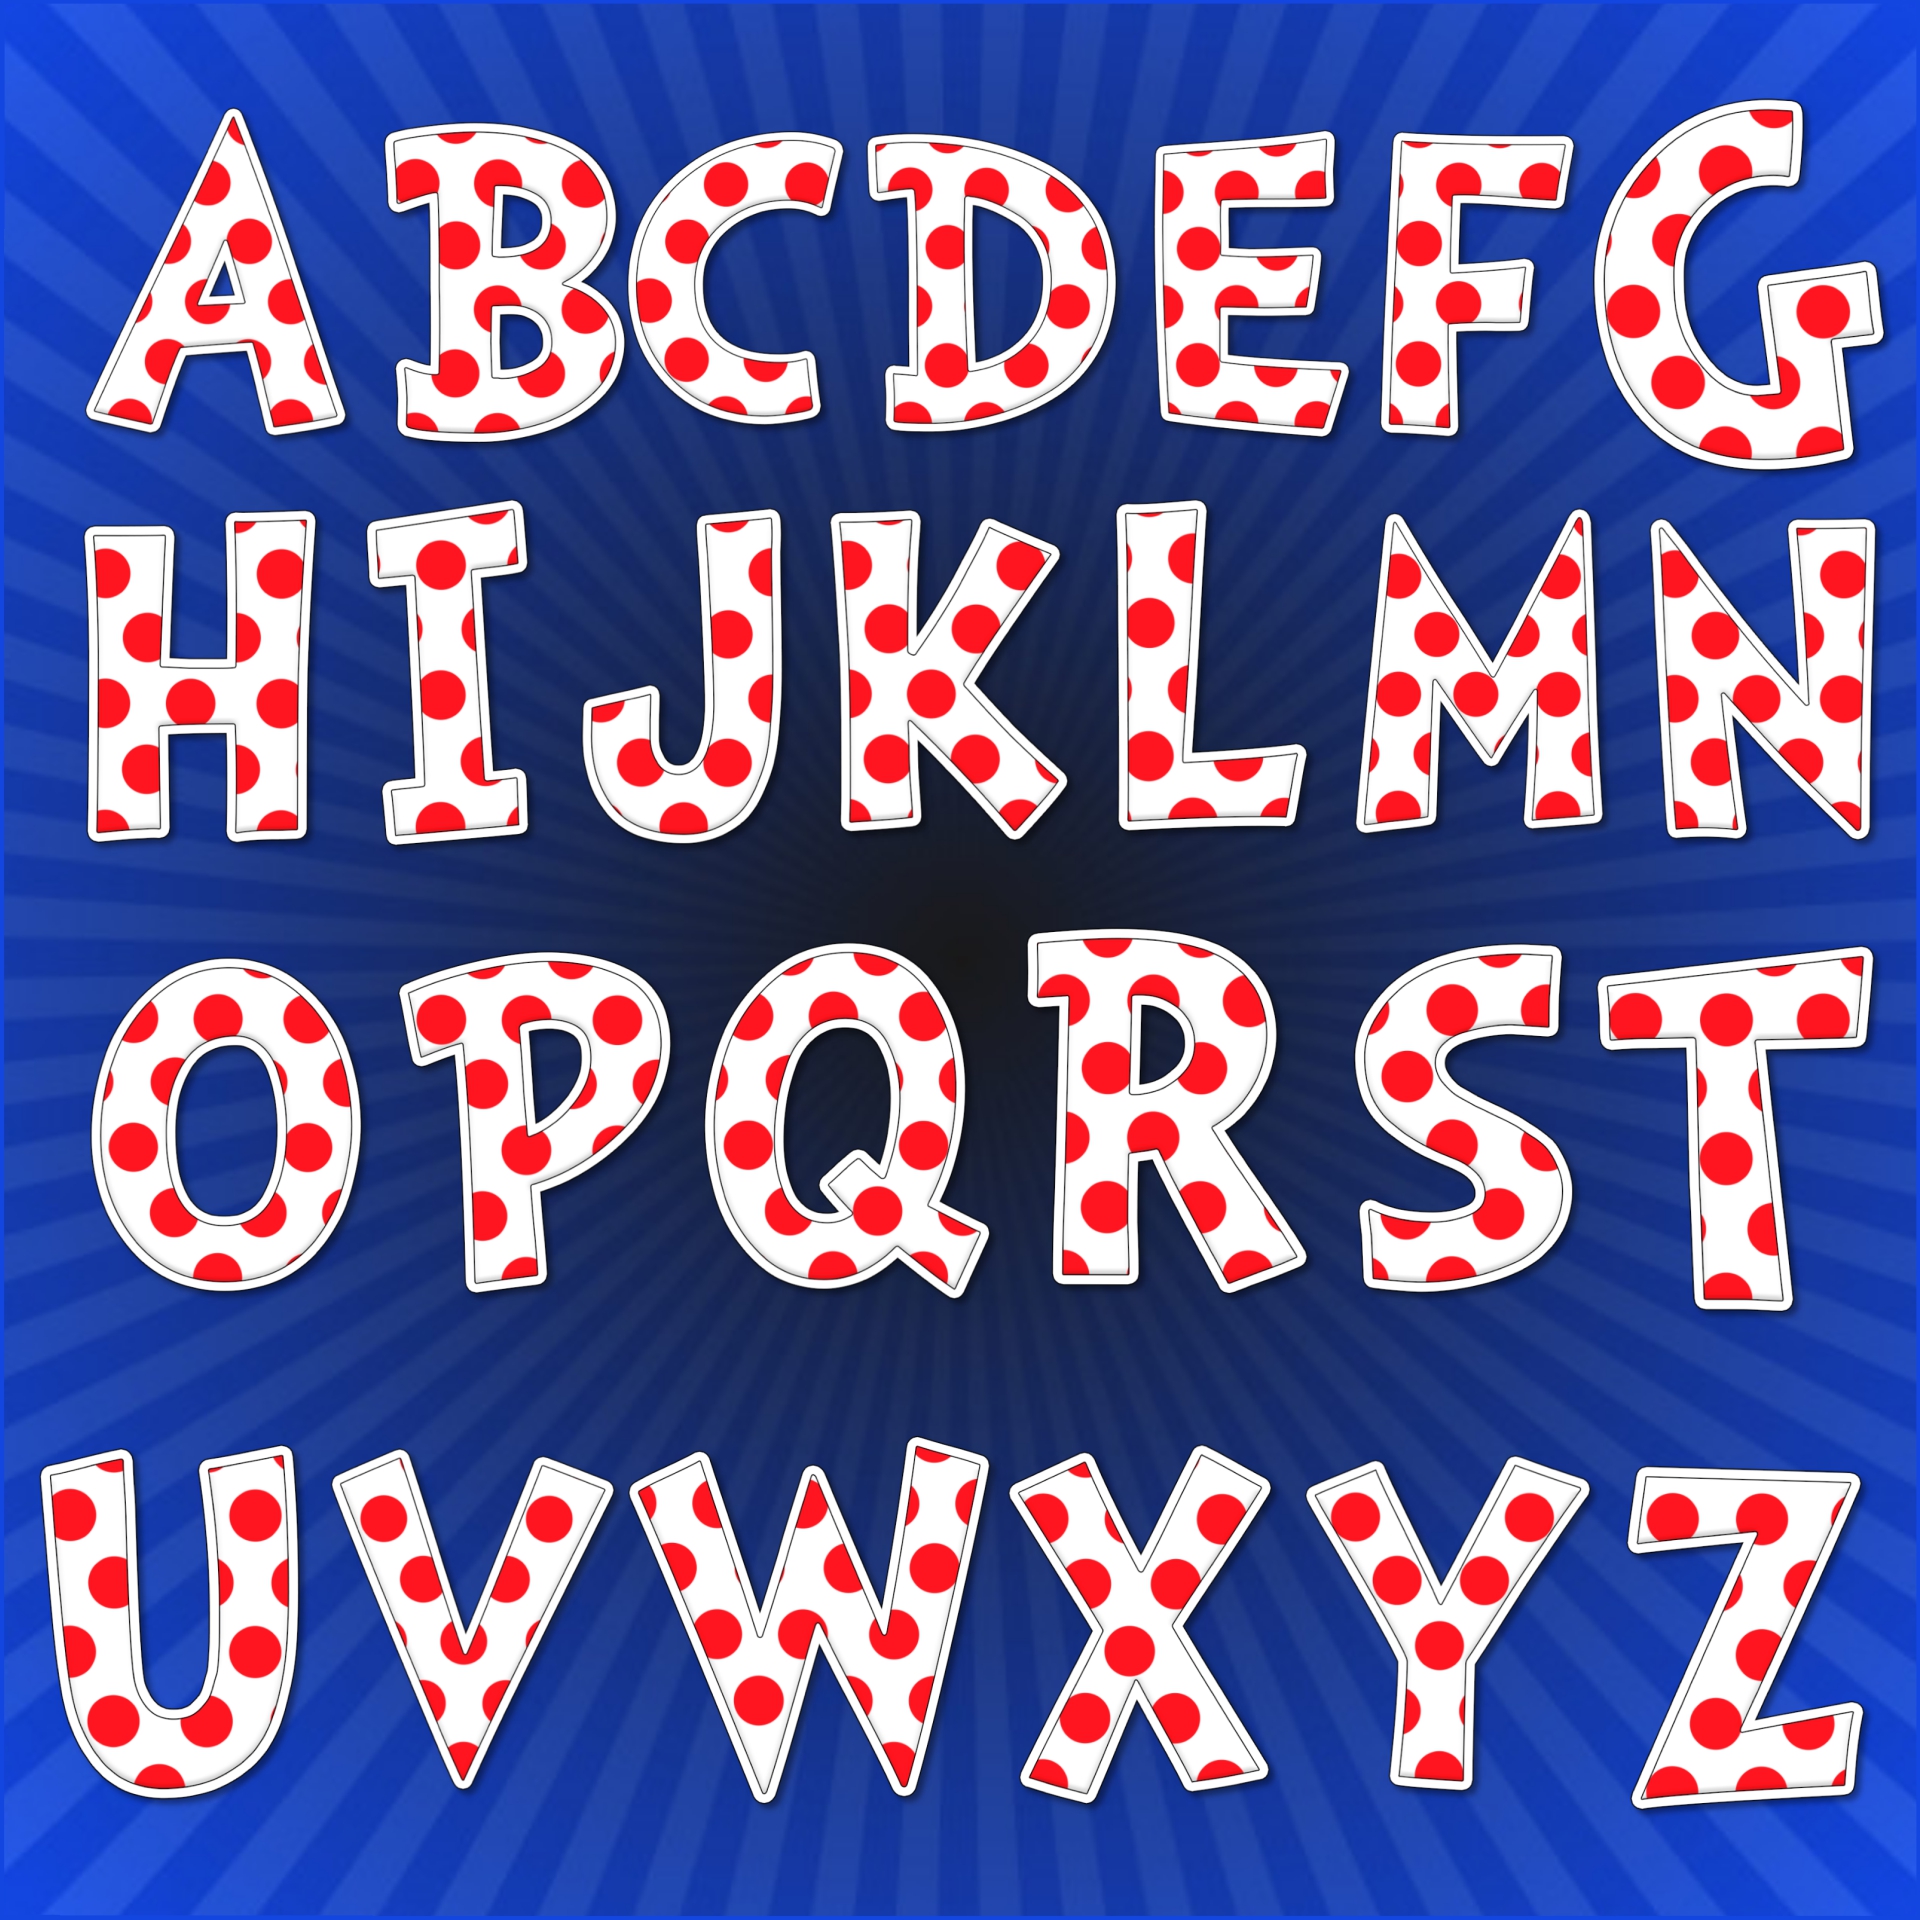 Dr. Seuss Alphabet Printables for Preschool